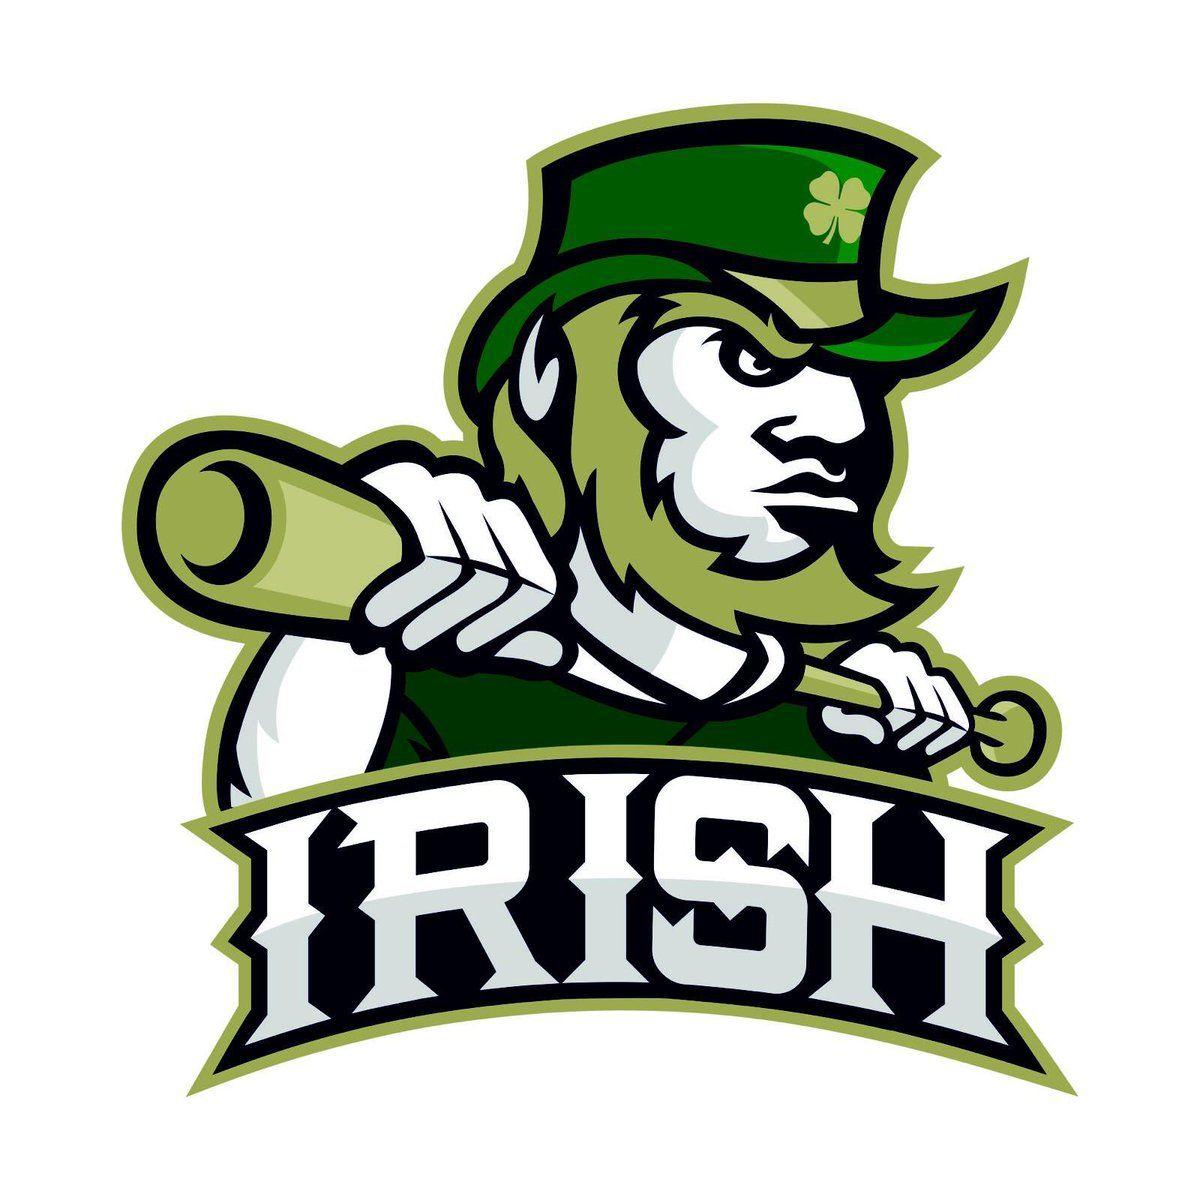 Great irish. Ирландия логотип. Ирландец эмблема. Irish картинки. Irish Leprechaun logo.